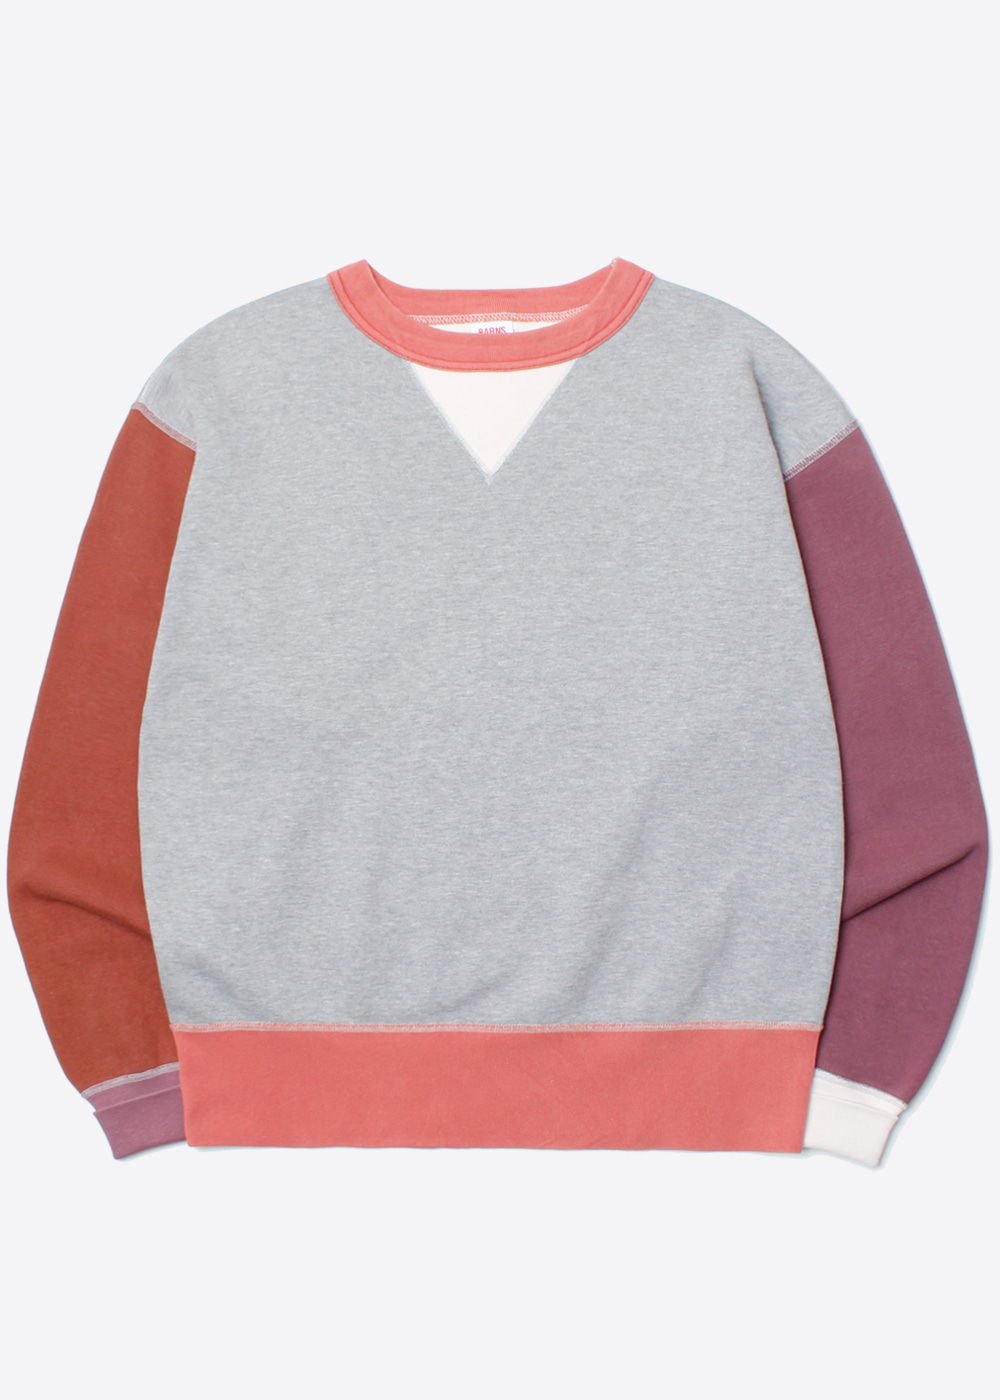 CHESWICKmulti color sweatshirt